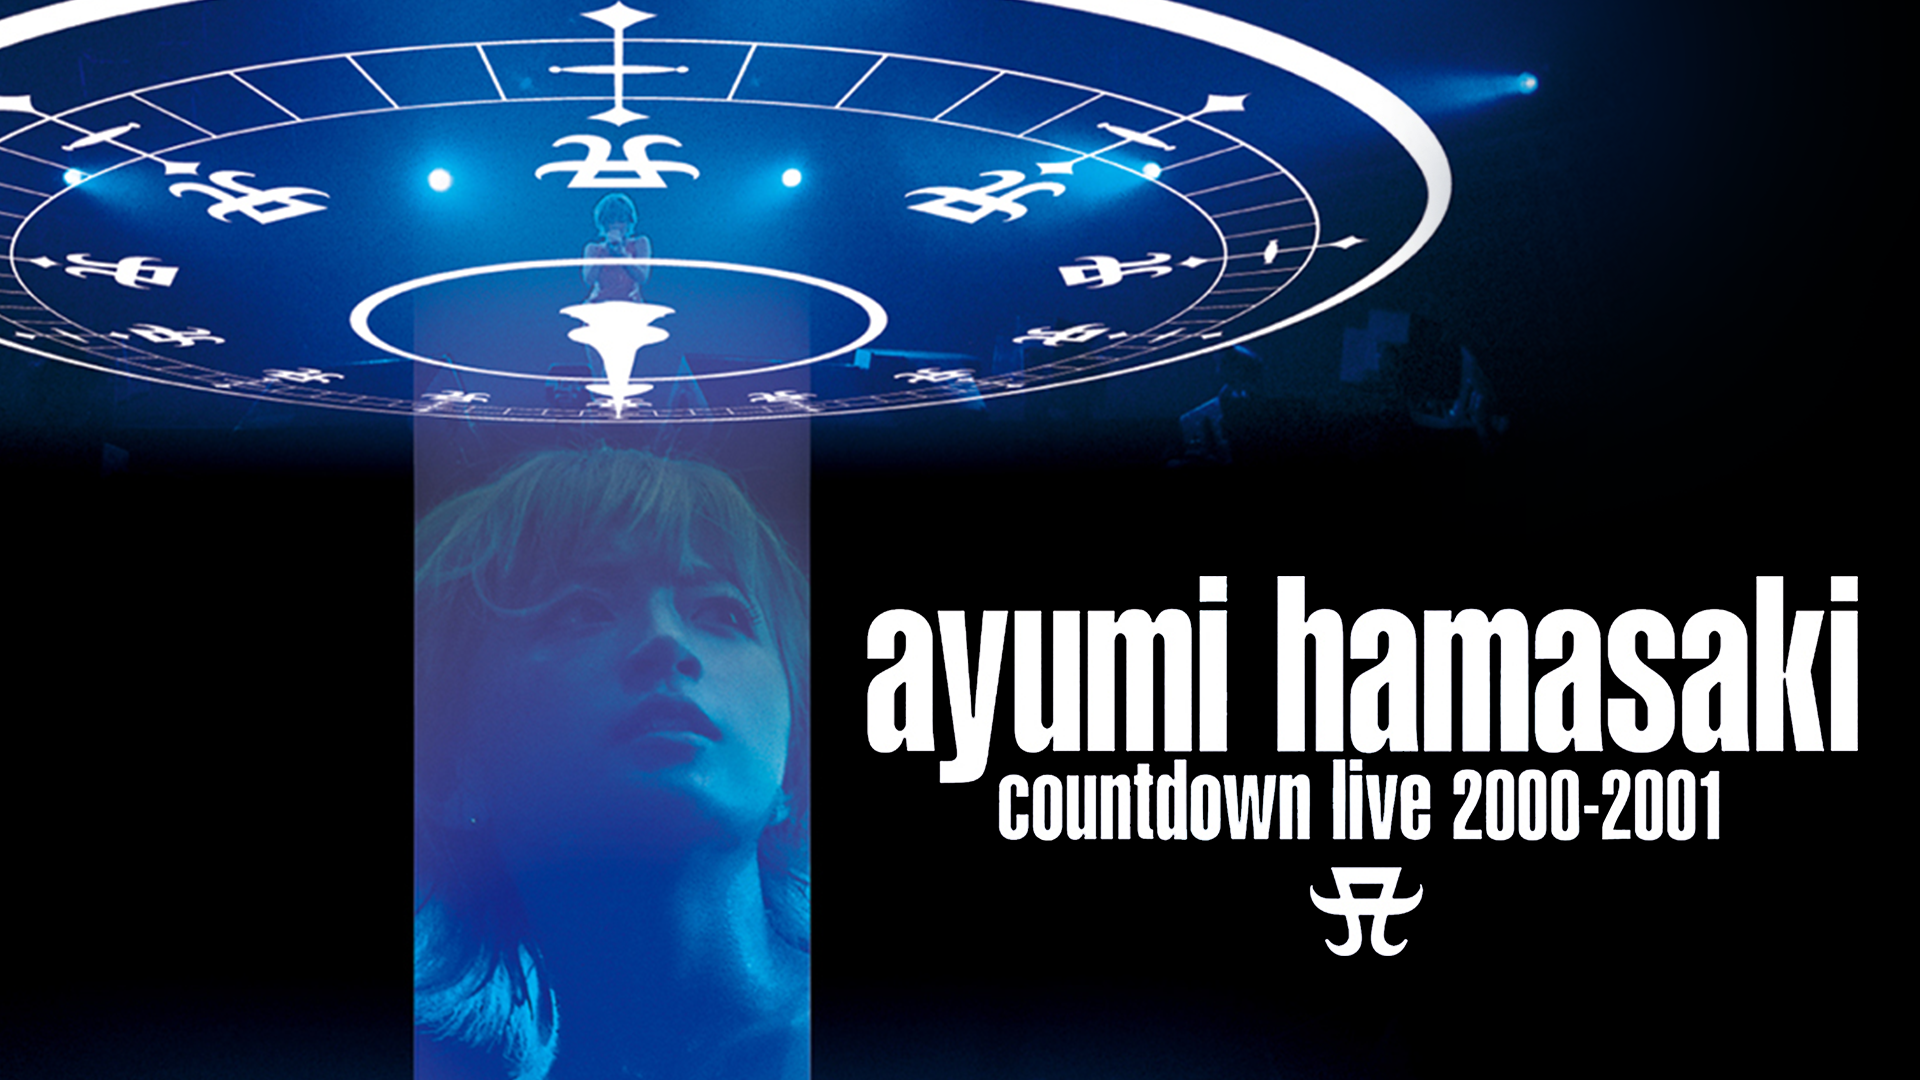 ayumi hamasaki countdown live 2000-2001 A(音楽・ライブ / 2001 